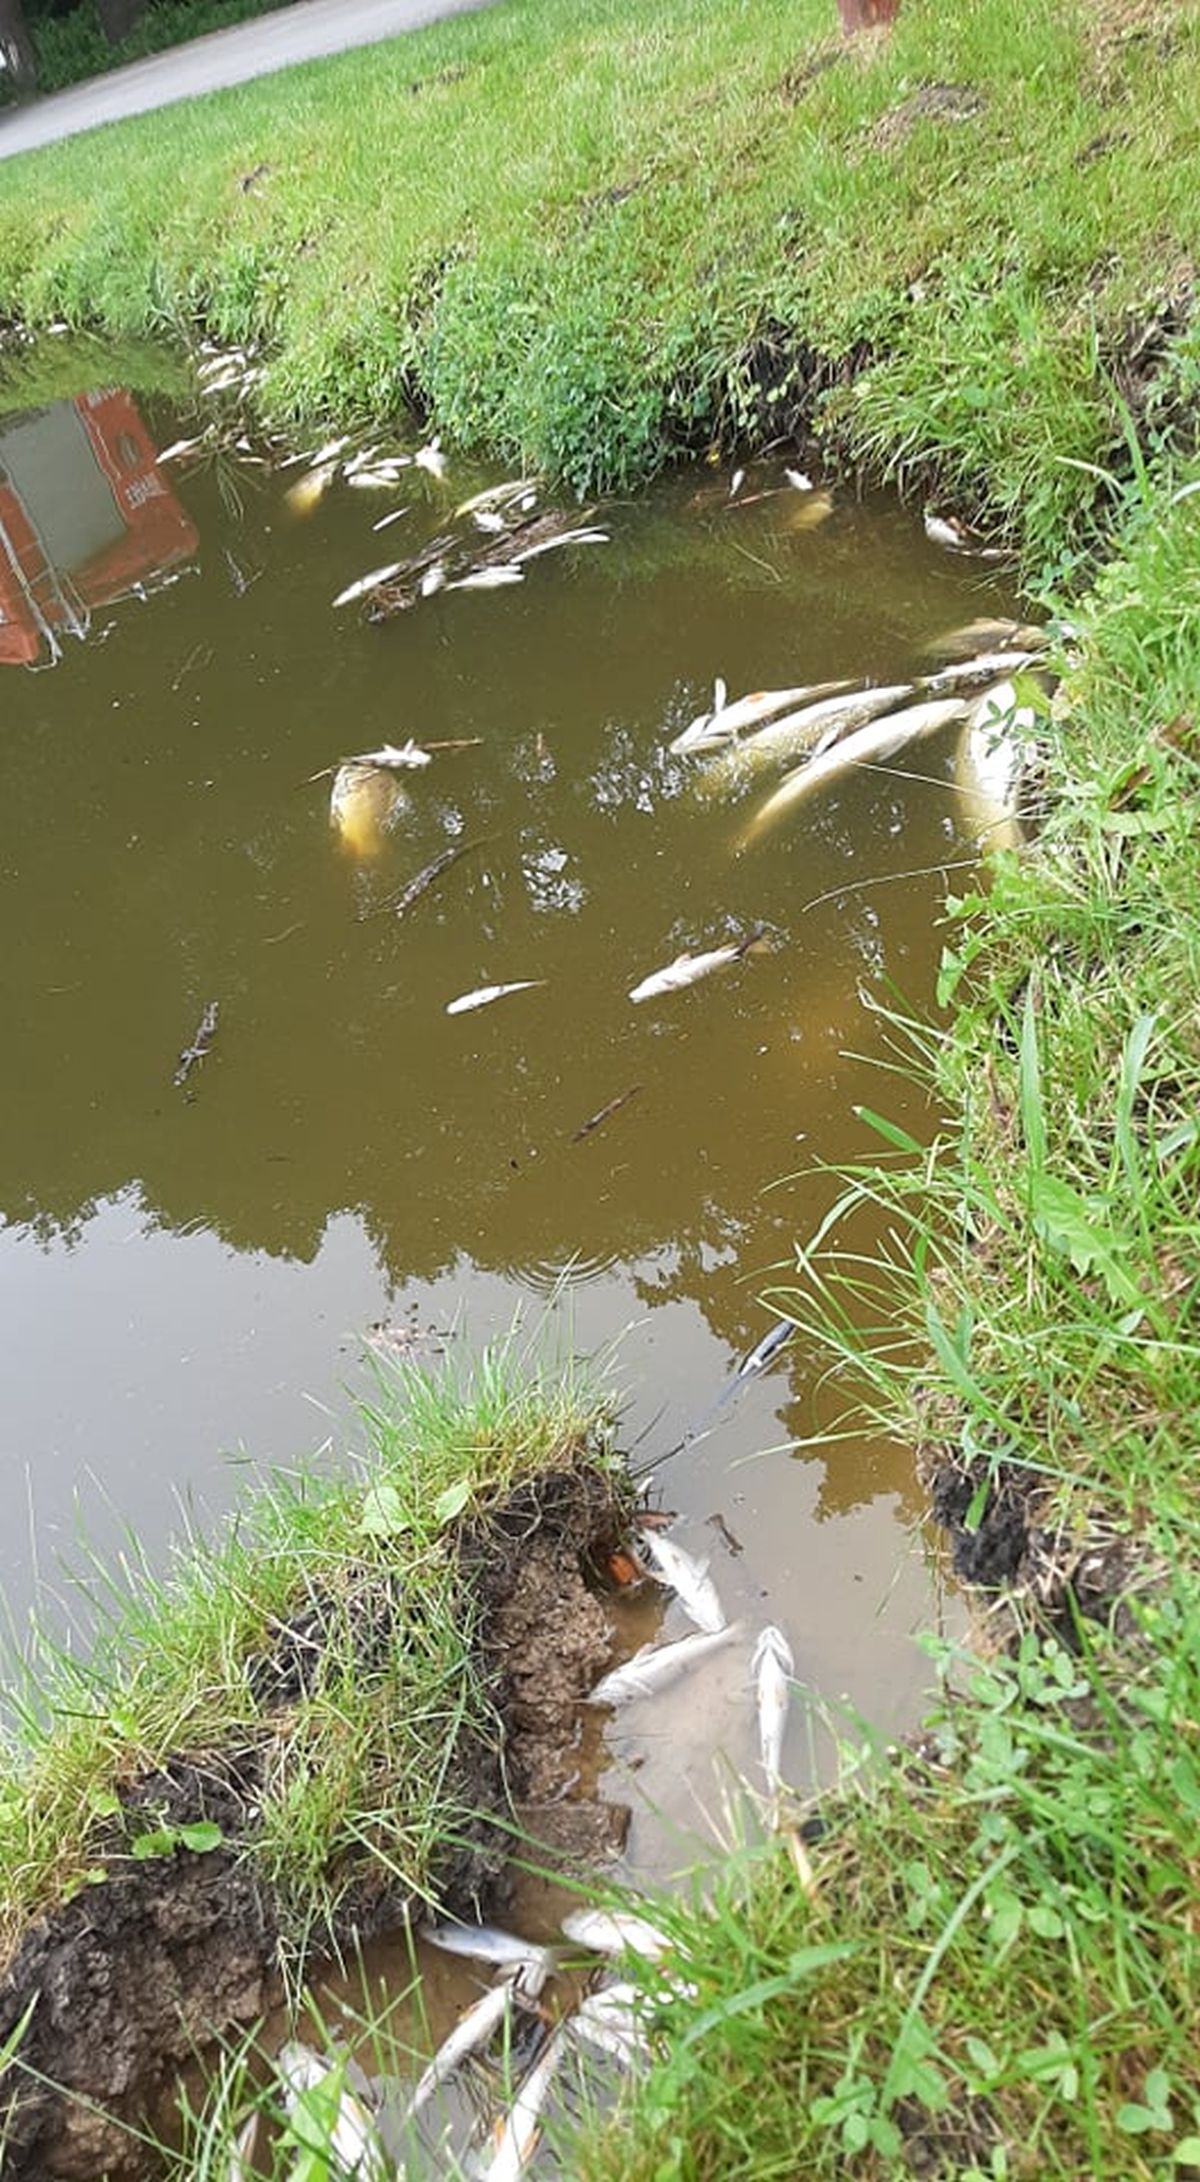 Ryby na łowisku koło Lublina padają jedna za drugą. Wędkarze podejrzewają, że zostały otrute (zdjęcia)